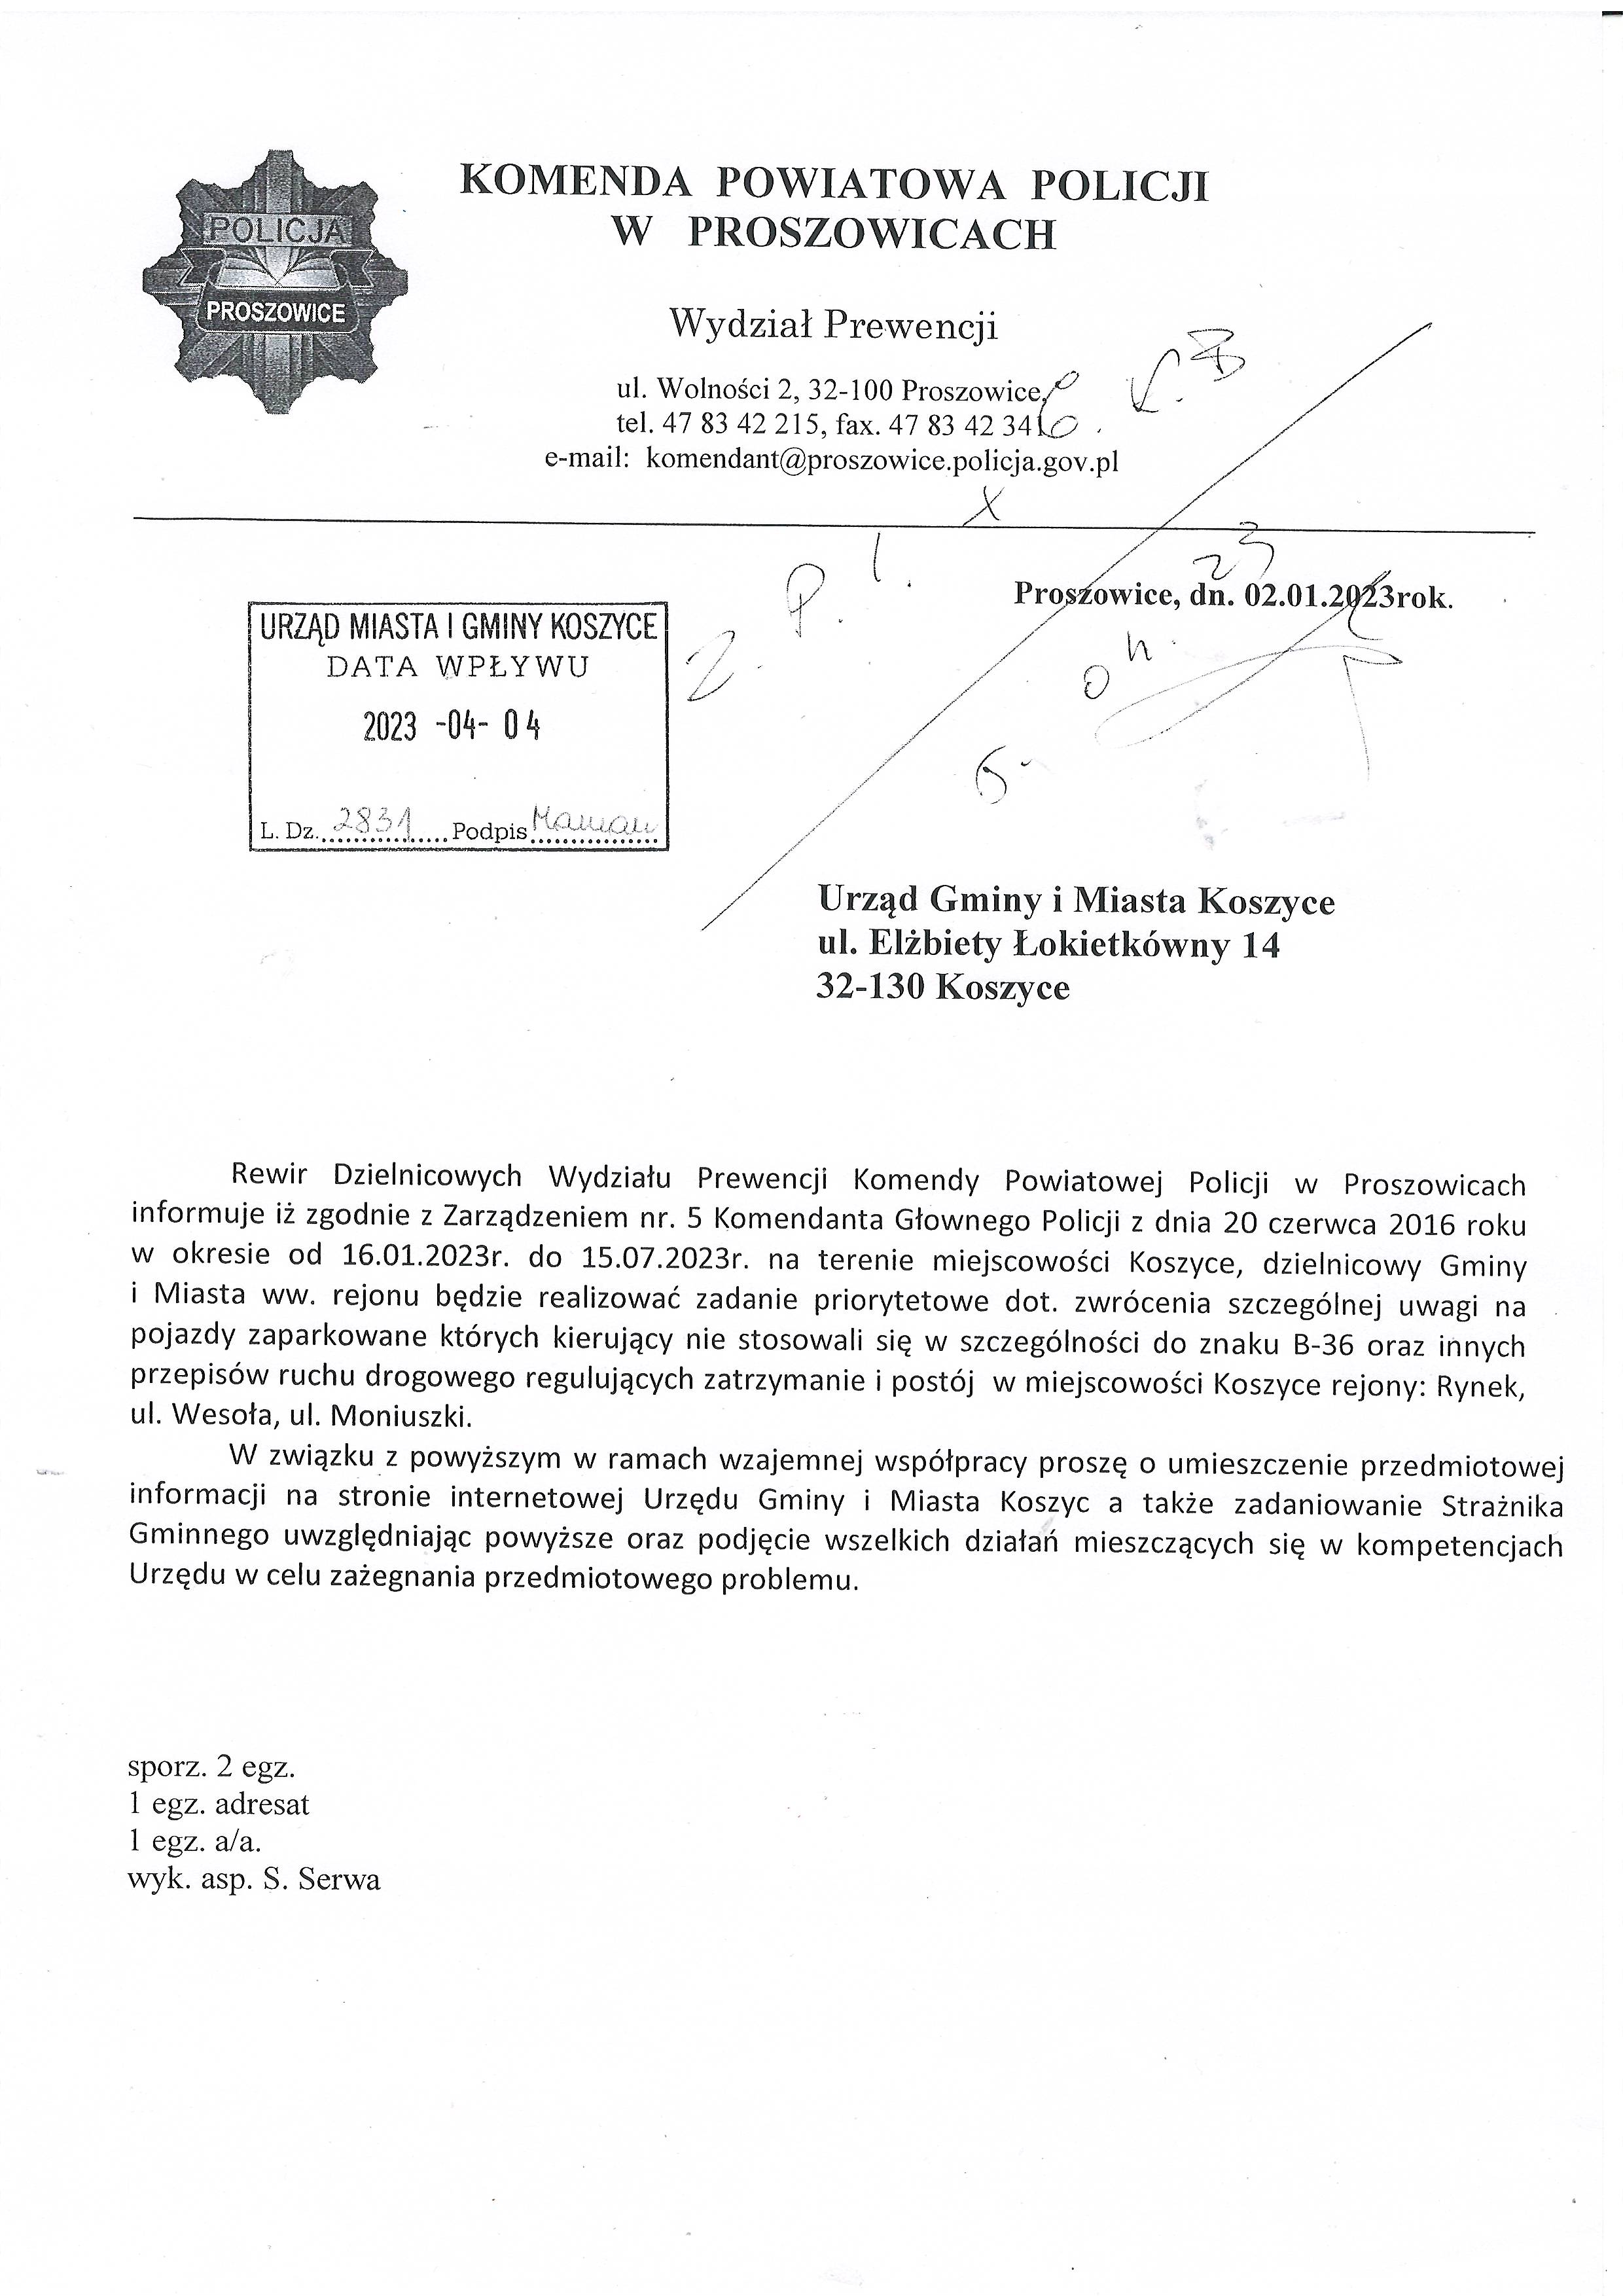 pismo Wydziału Prewencji Komendy Powiatowej Policji w Proszowicach